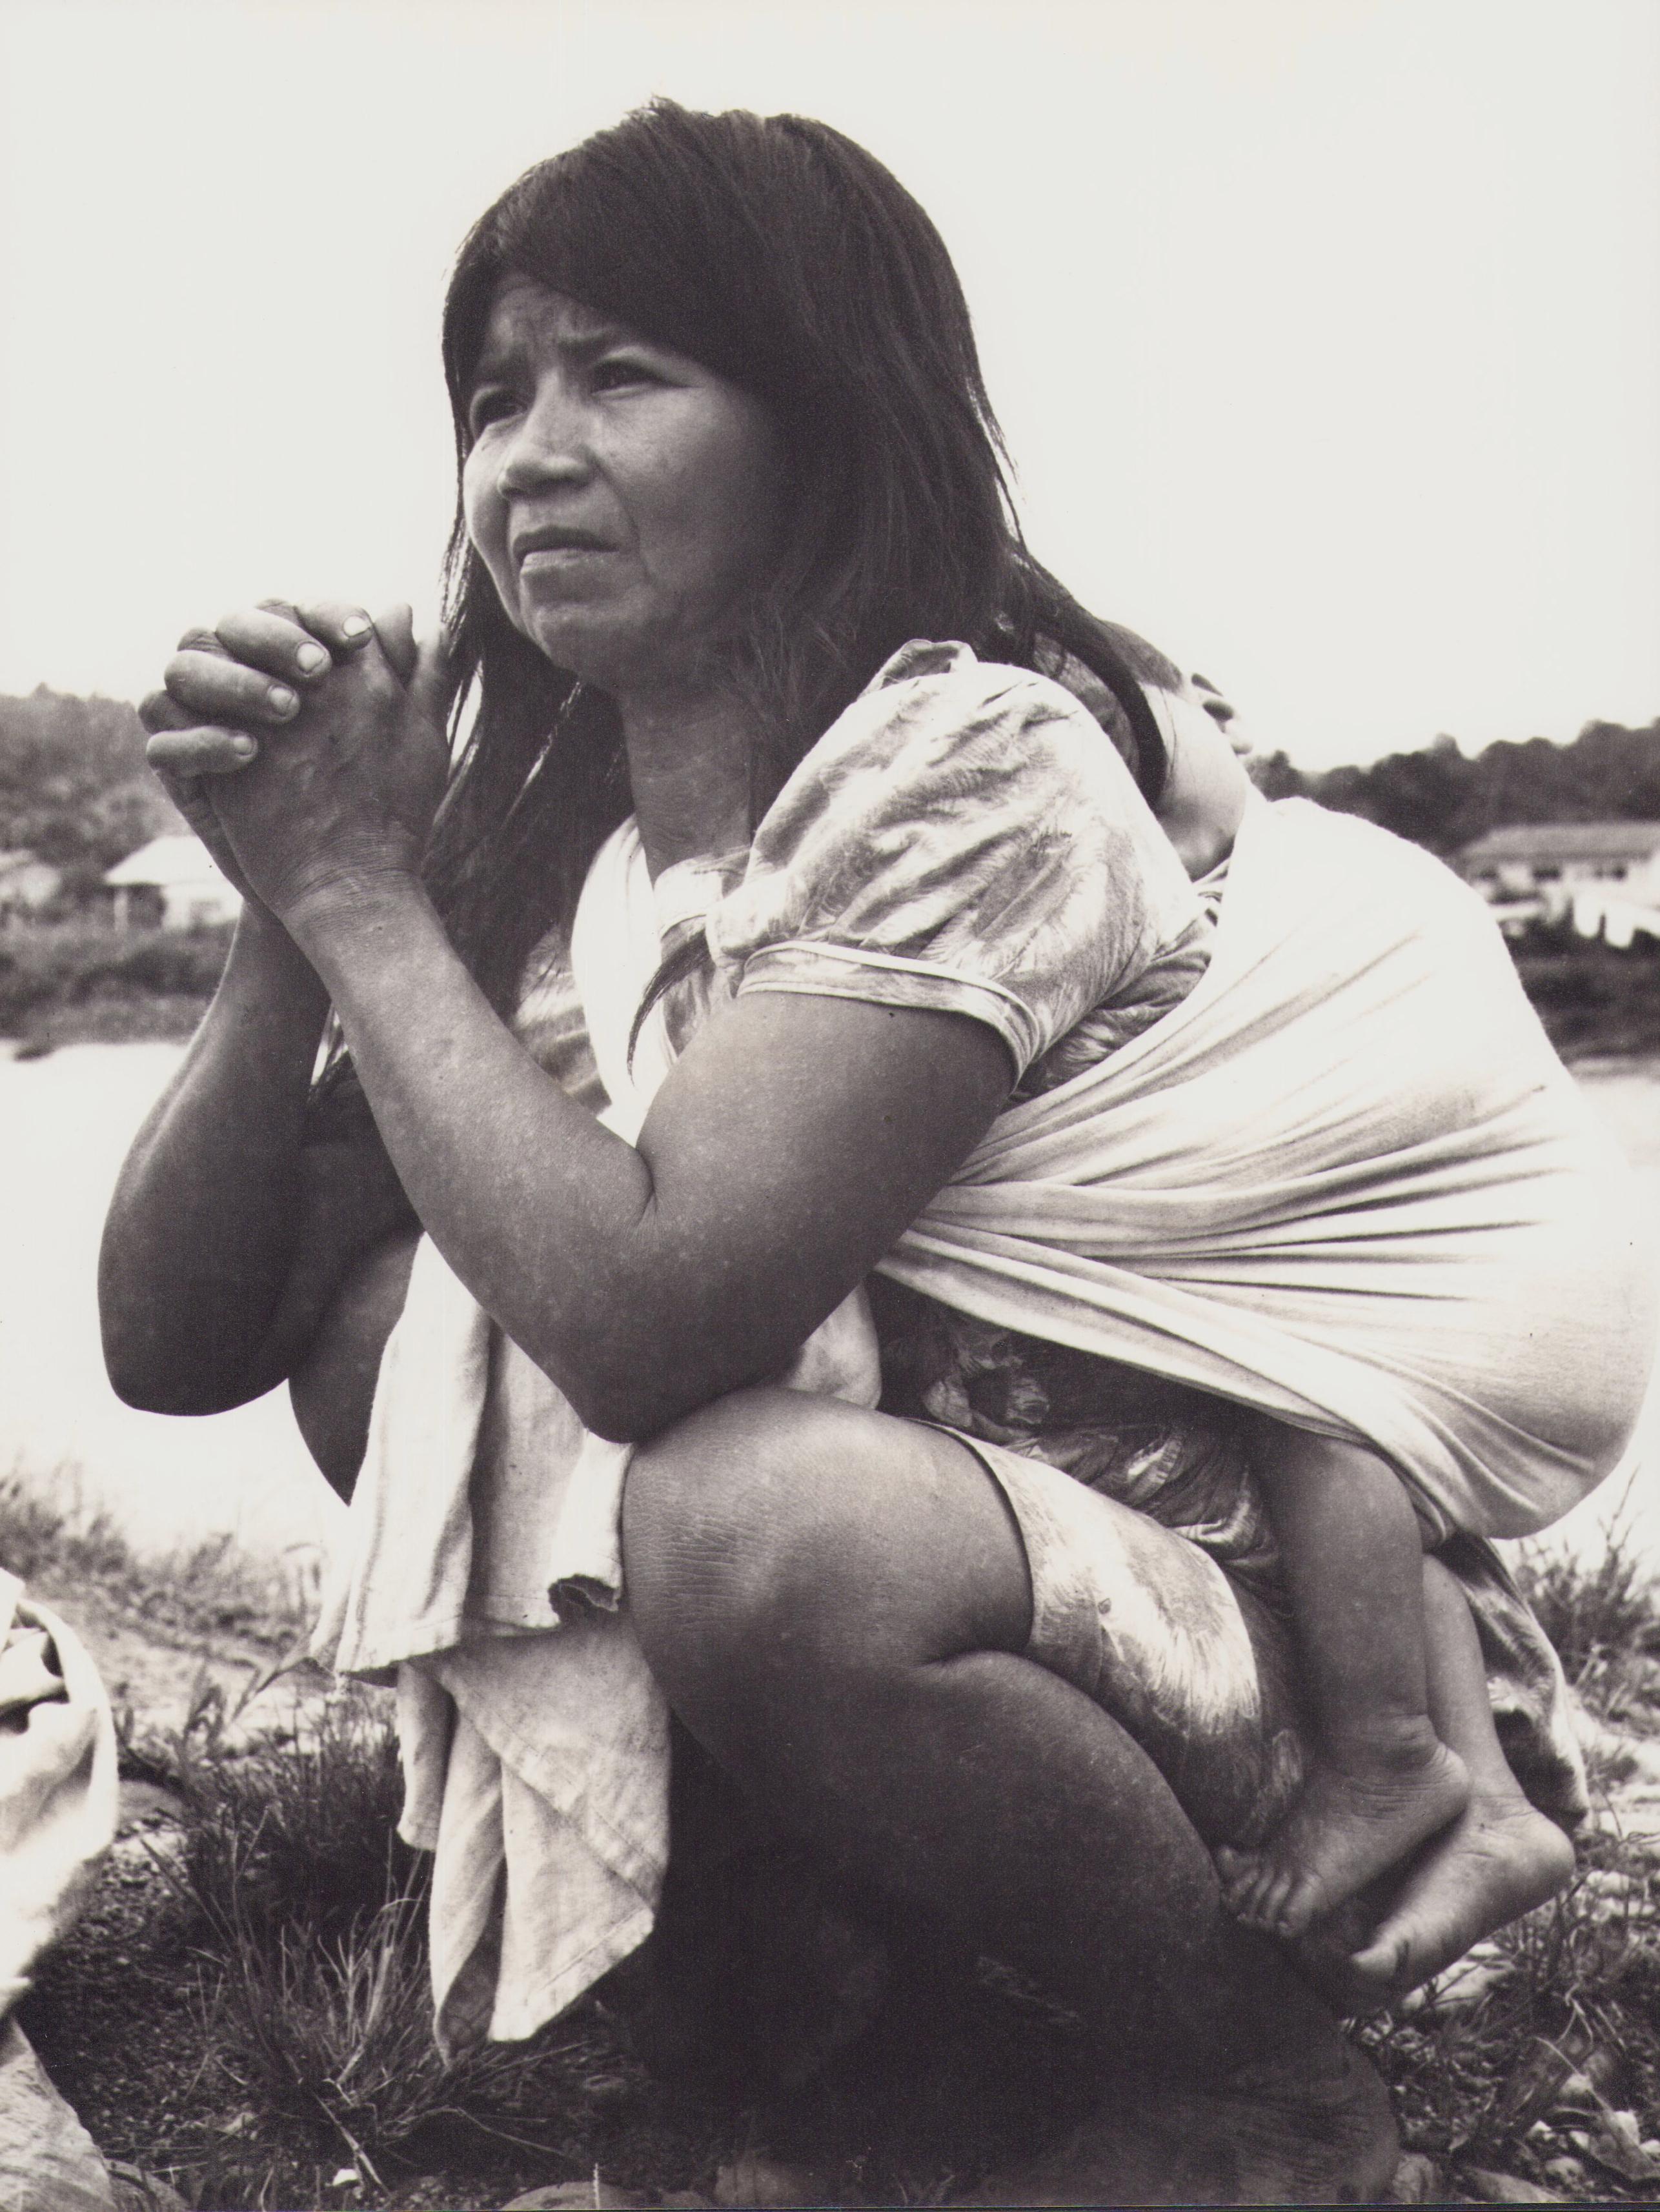 Hanna Seidel Portrait Photograph - Ecuador, Woman, Indigenous, Black and White Photography, 1960s, 29 x 22 cm